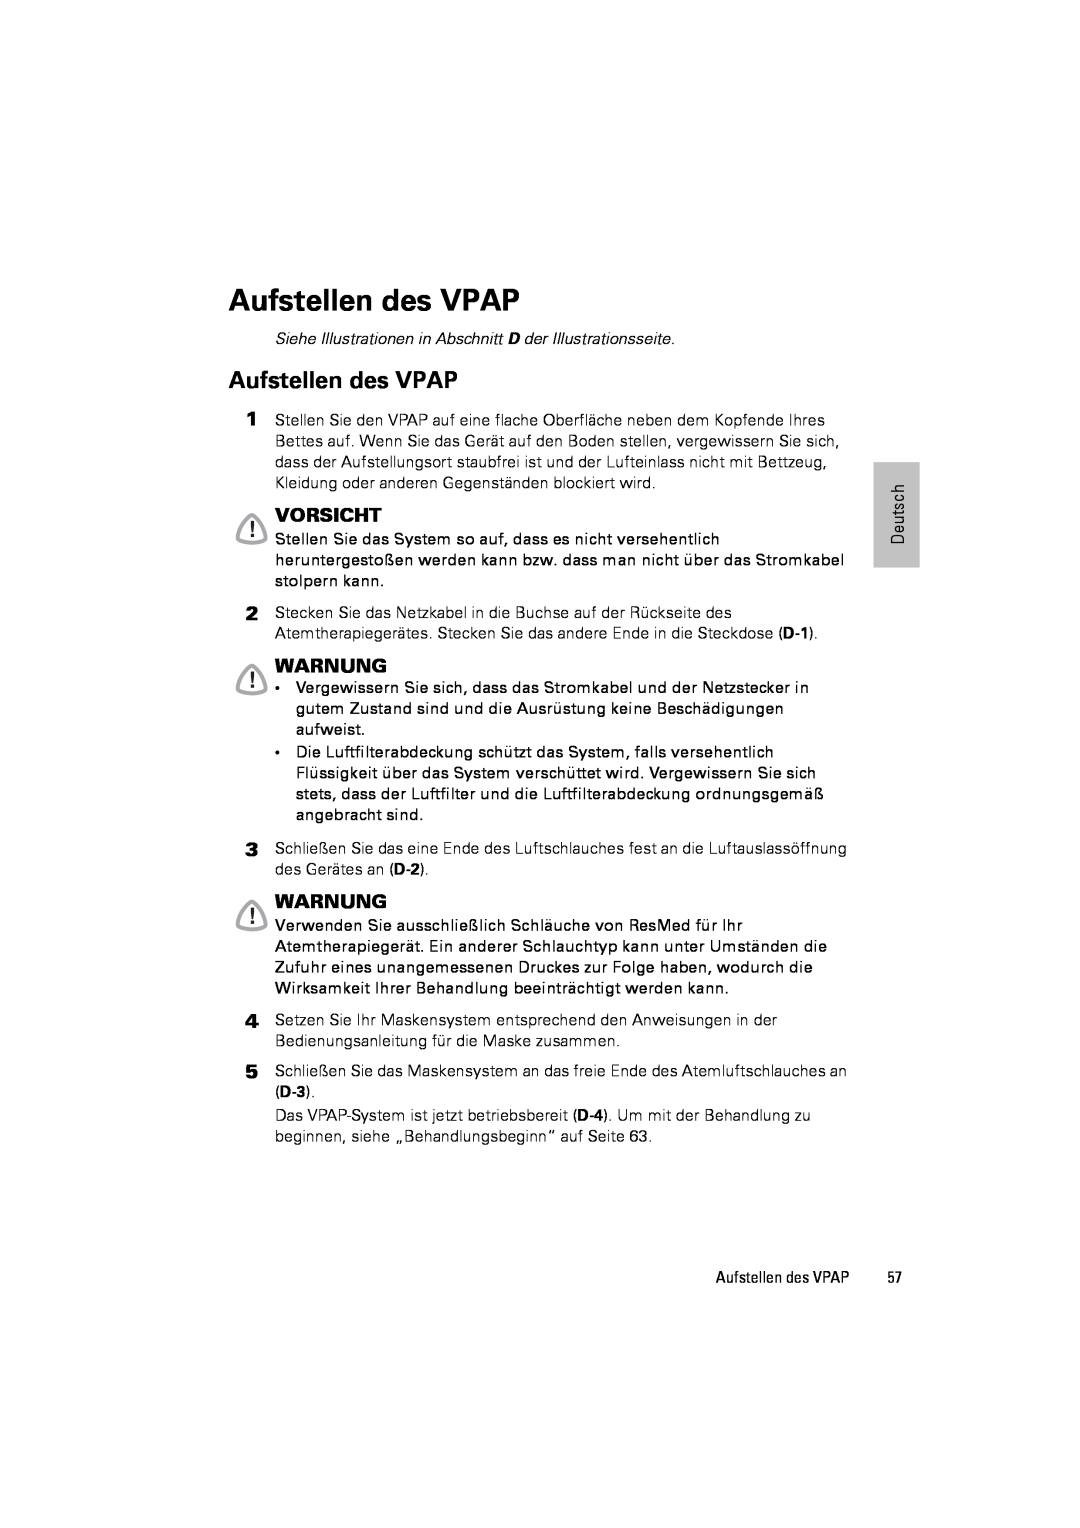 ResMed III & III ST user manual Aufstellen des VPAP, Vorsicht, Warnung 